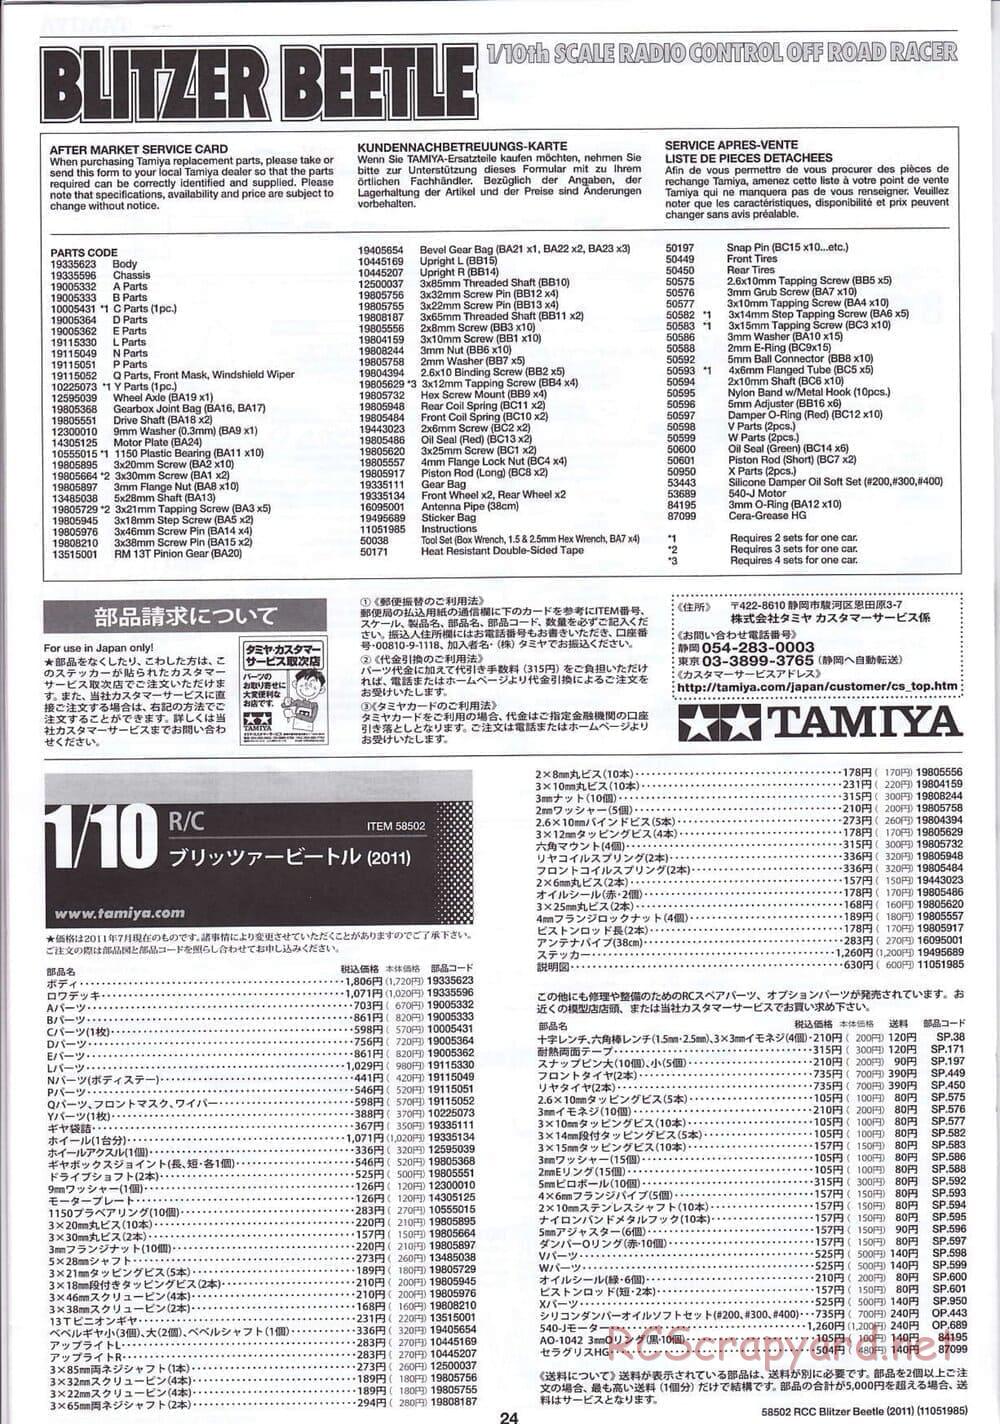 Tamiya - Blitzer Beetle 2011 - FAL Chassis - Manual - Page 24